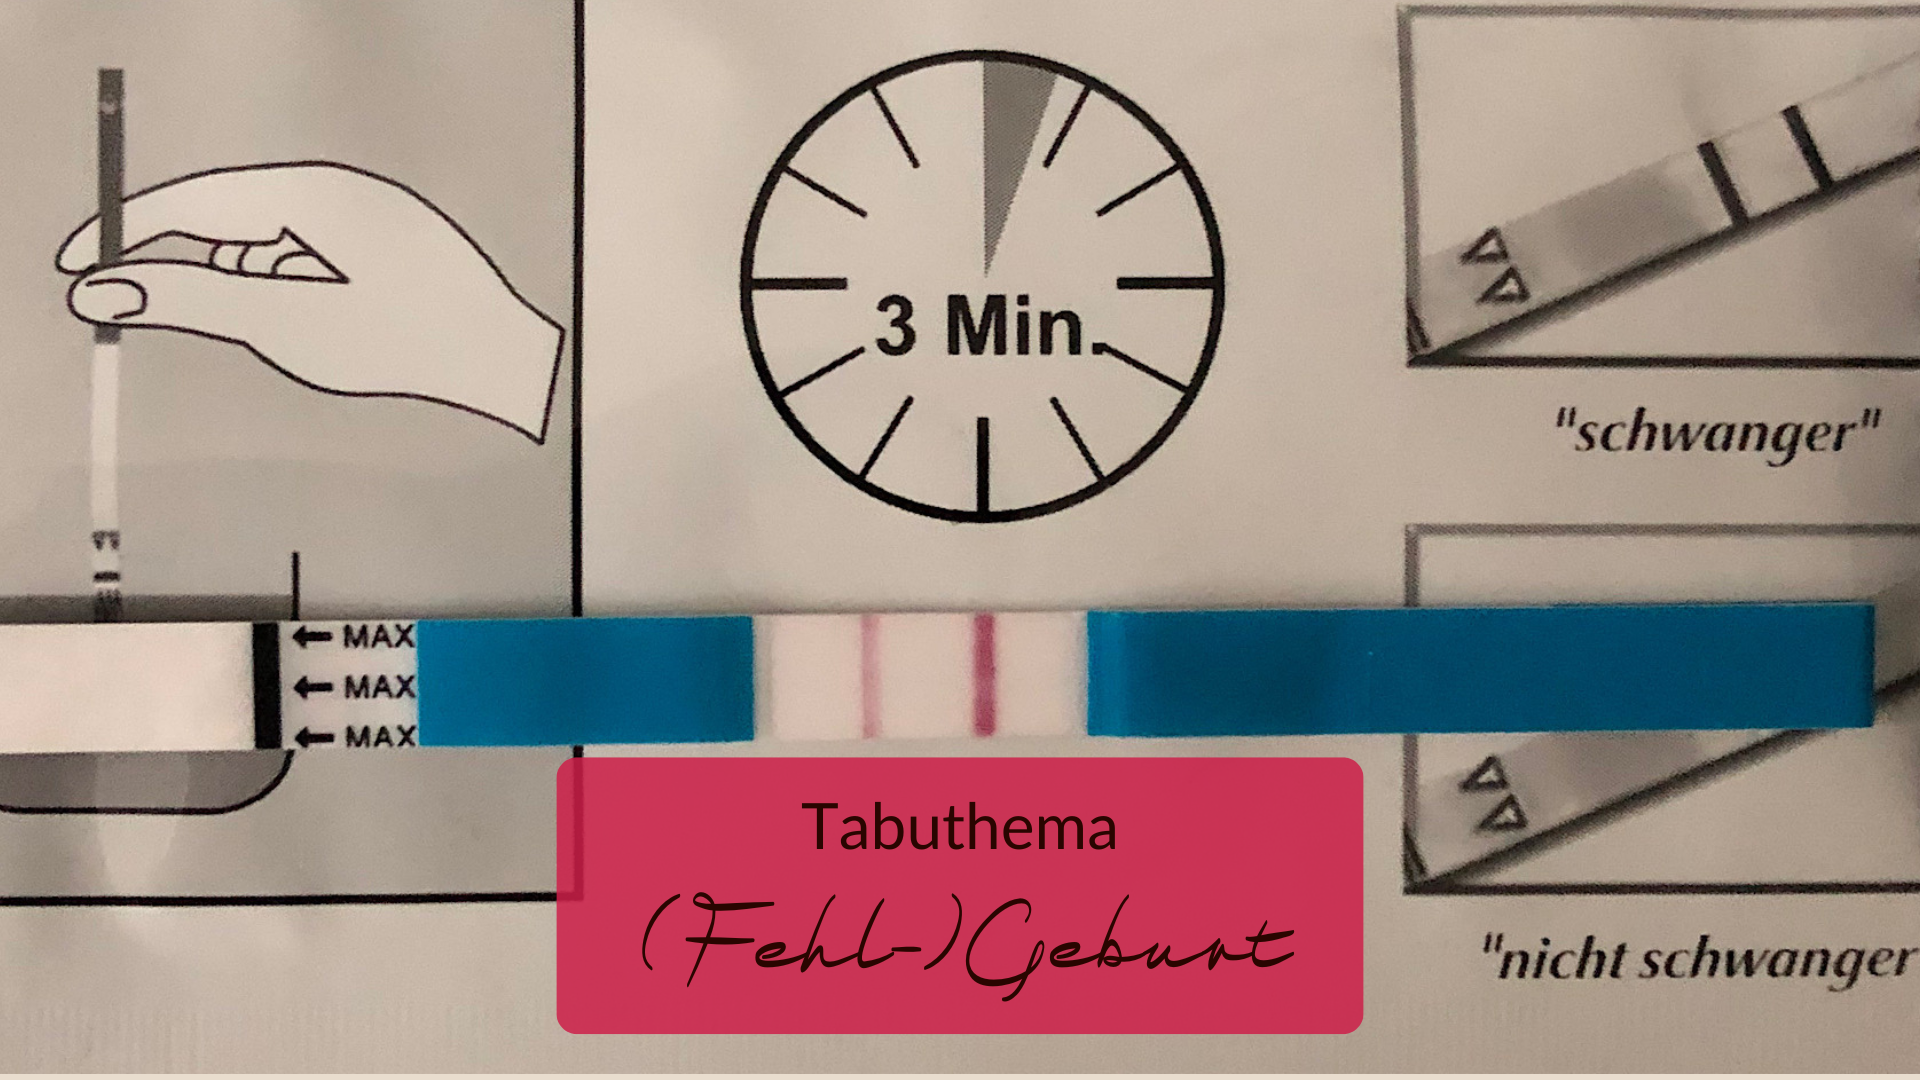 Ein positiver Schwangerschaftstest liegt auf der Verpackung mit der Anleitung. Ein Symbolbild für das Tabuthema (Fehl-)Geburt.